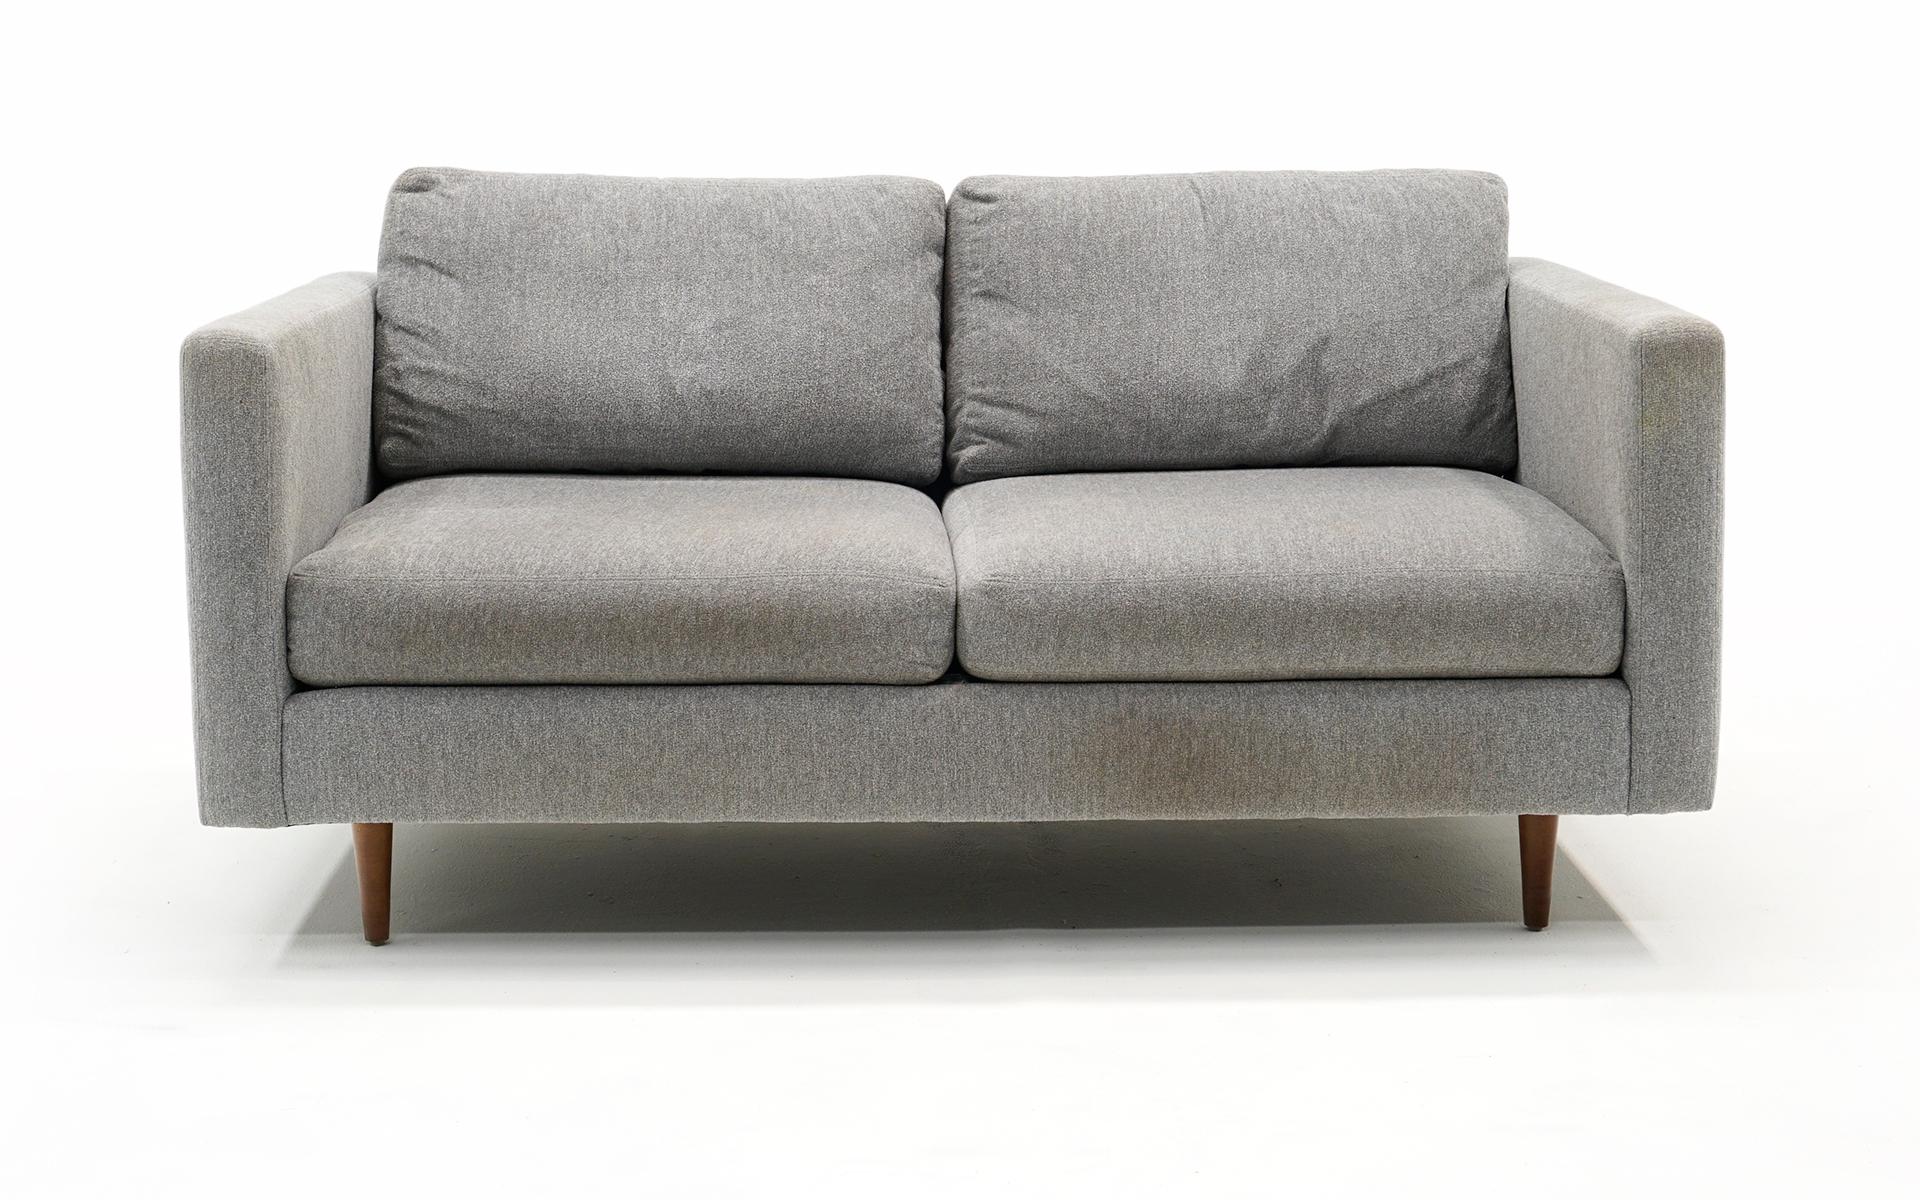 Dies ist ein neueres Zweisitzer-Sofa / Loveseat / Love Seat, entworfen von Milo Baughman für Thayer Coggin. Hellgrauer Originalstoff mit konischen Beinen aus Nussbaum. Signiert sowohl mit dem Milo Baughman und Thayer Coggin Label.  Auf unseren Fotos